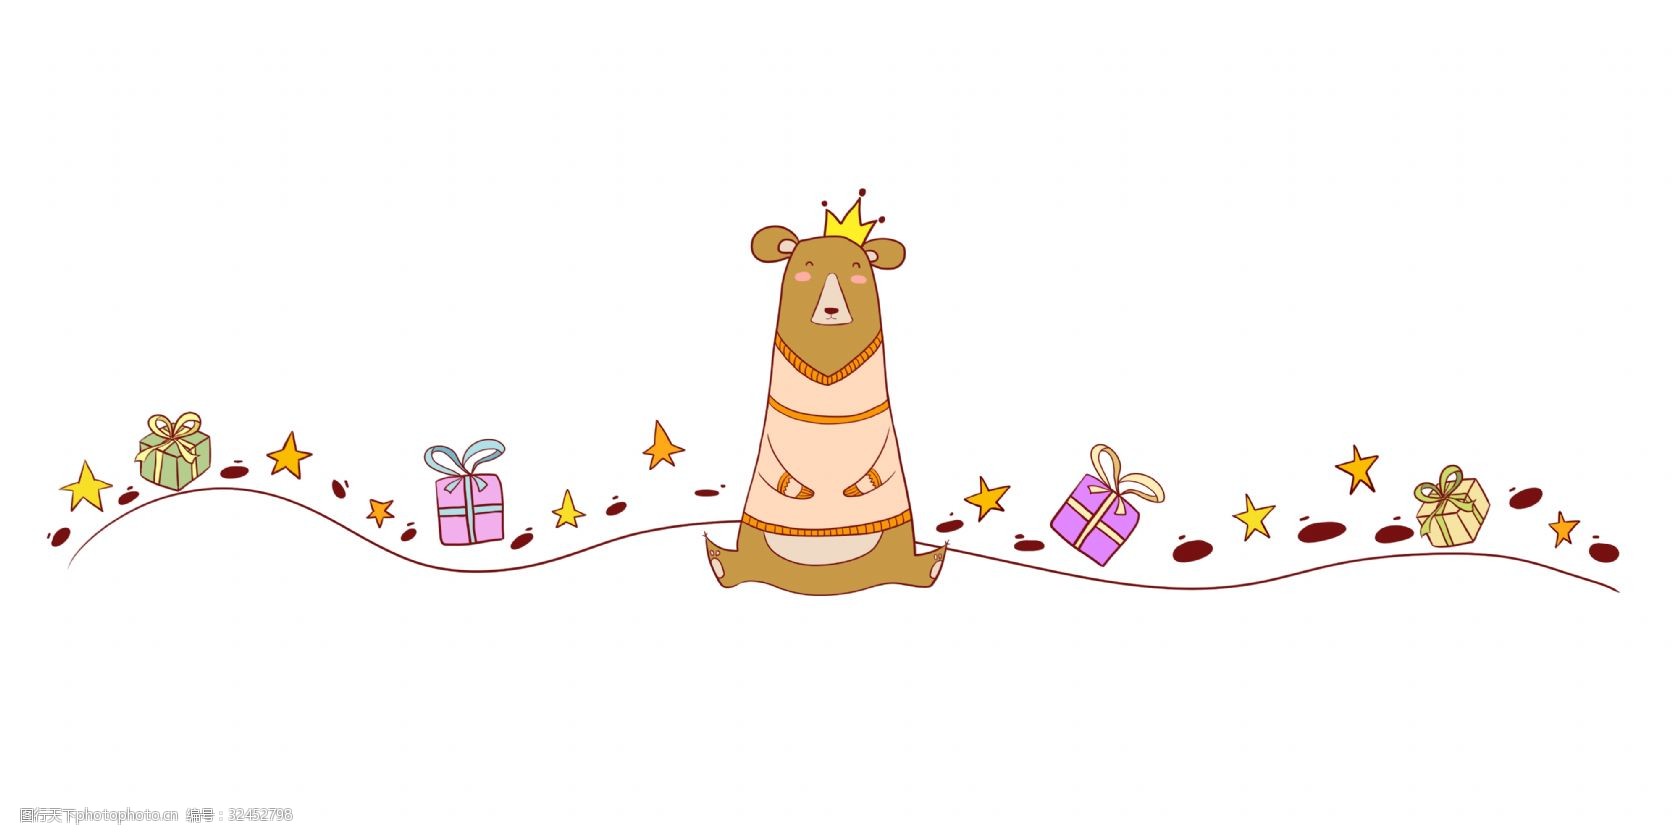 礼物分割线 棕色熊分割线 节日 卡通分割线 礼盒 漂亮的分割线 生日